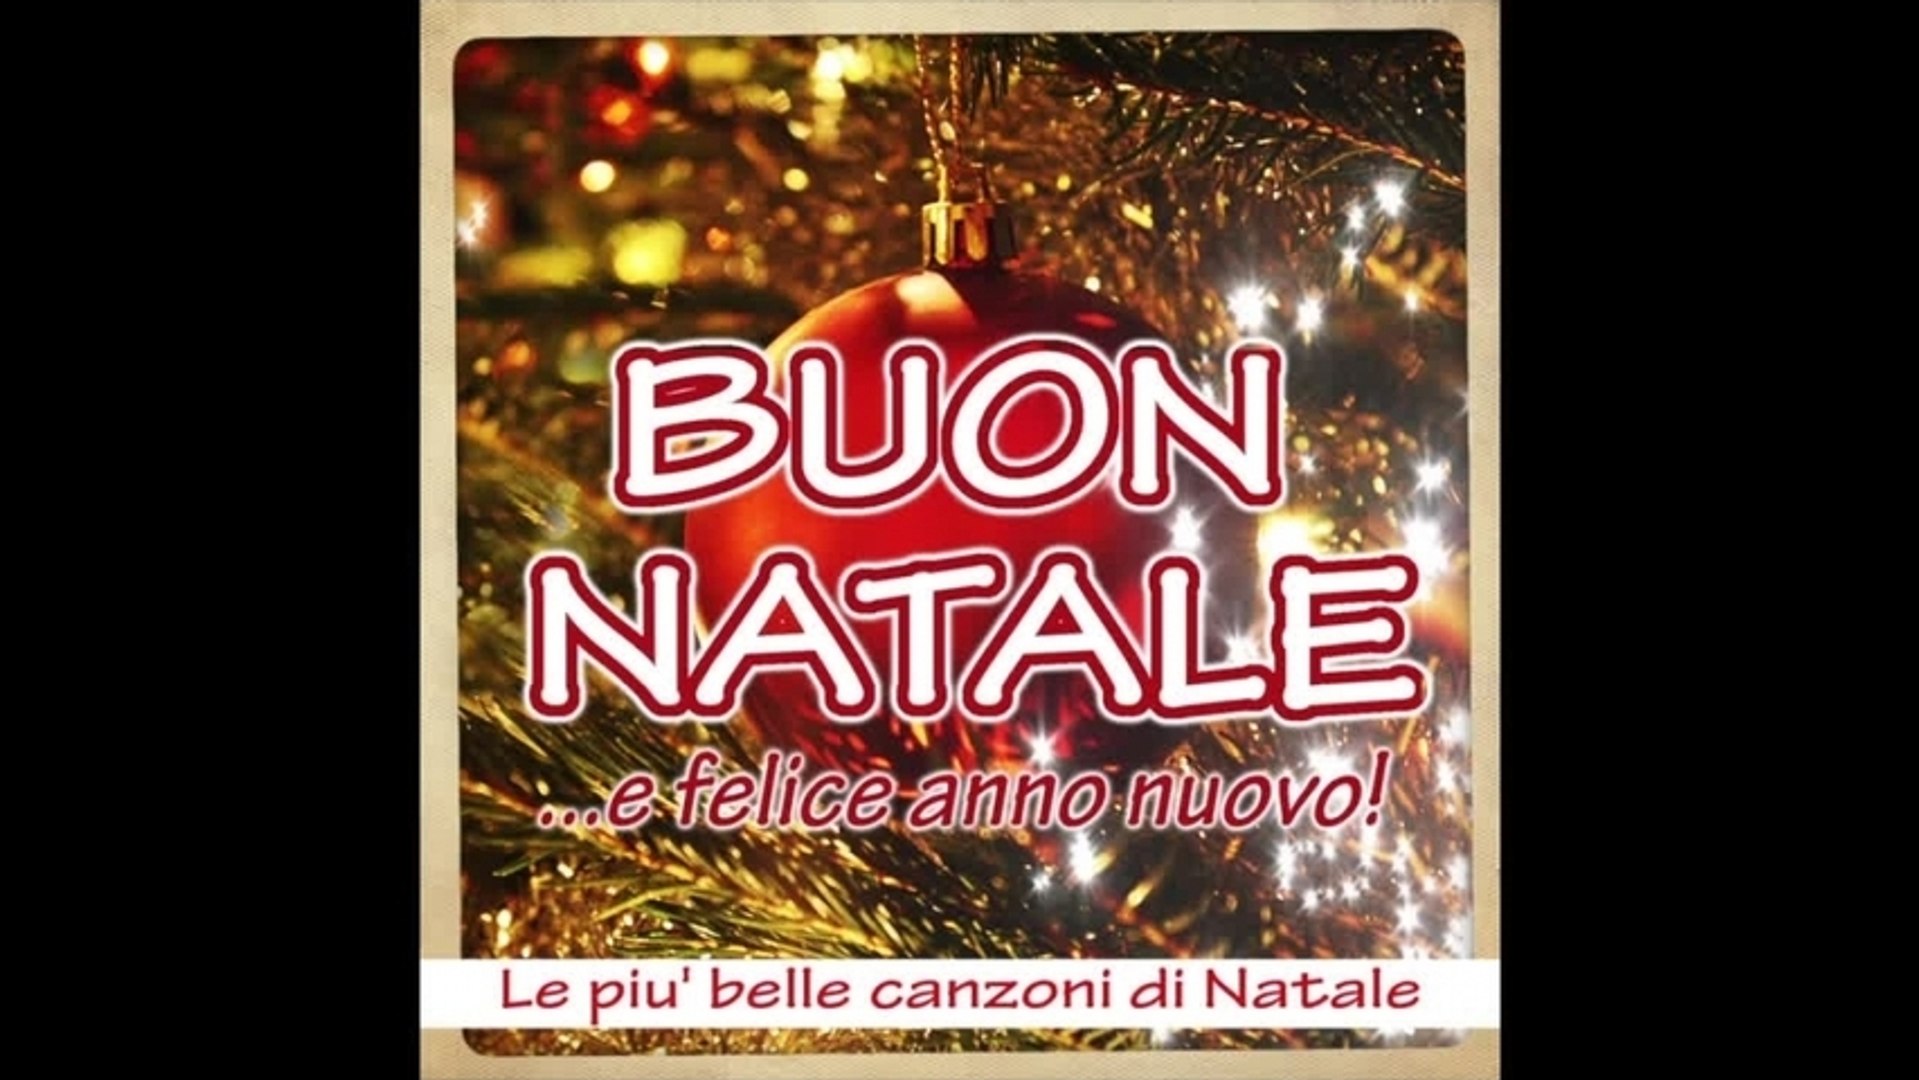 Canzoni Di Buon Natale.Buon Natale E Felice Anno Nuovo Le Piu Belle Canzoni Di Natale Video Dailymotion